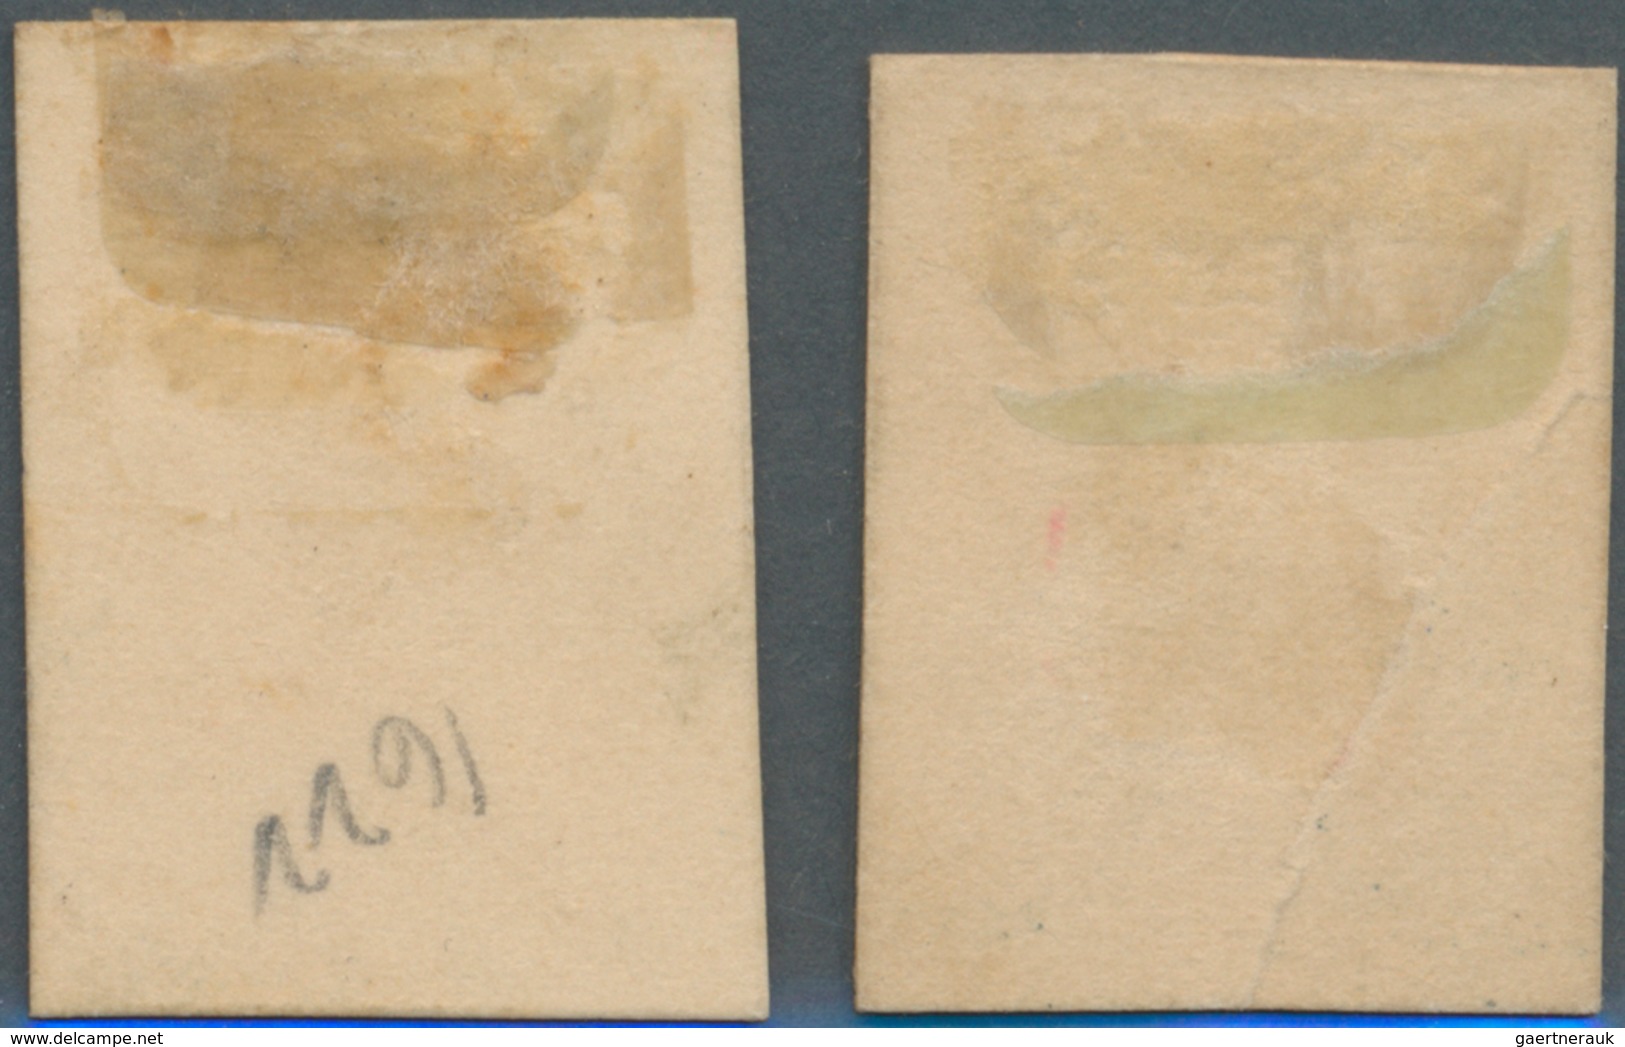 Kolumbien: 1904, 5 P. And 10 P. Proofs On Cardboard Paper, 5 P. Slight Crease, Very Scarce - Kolumbien